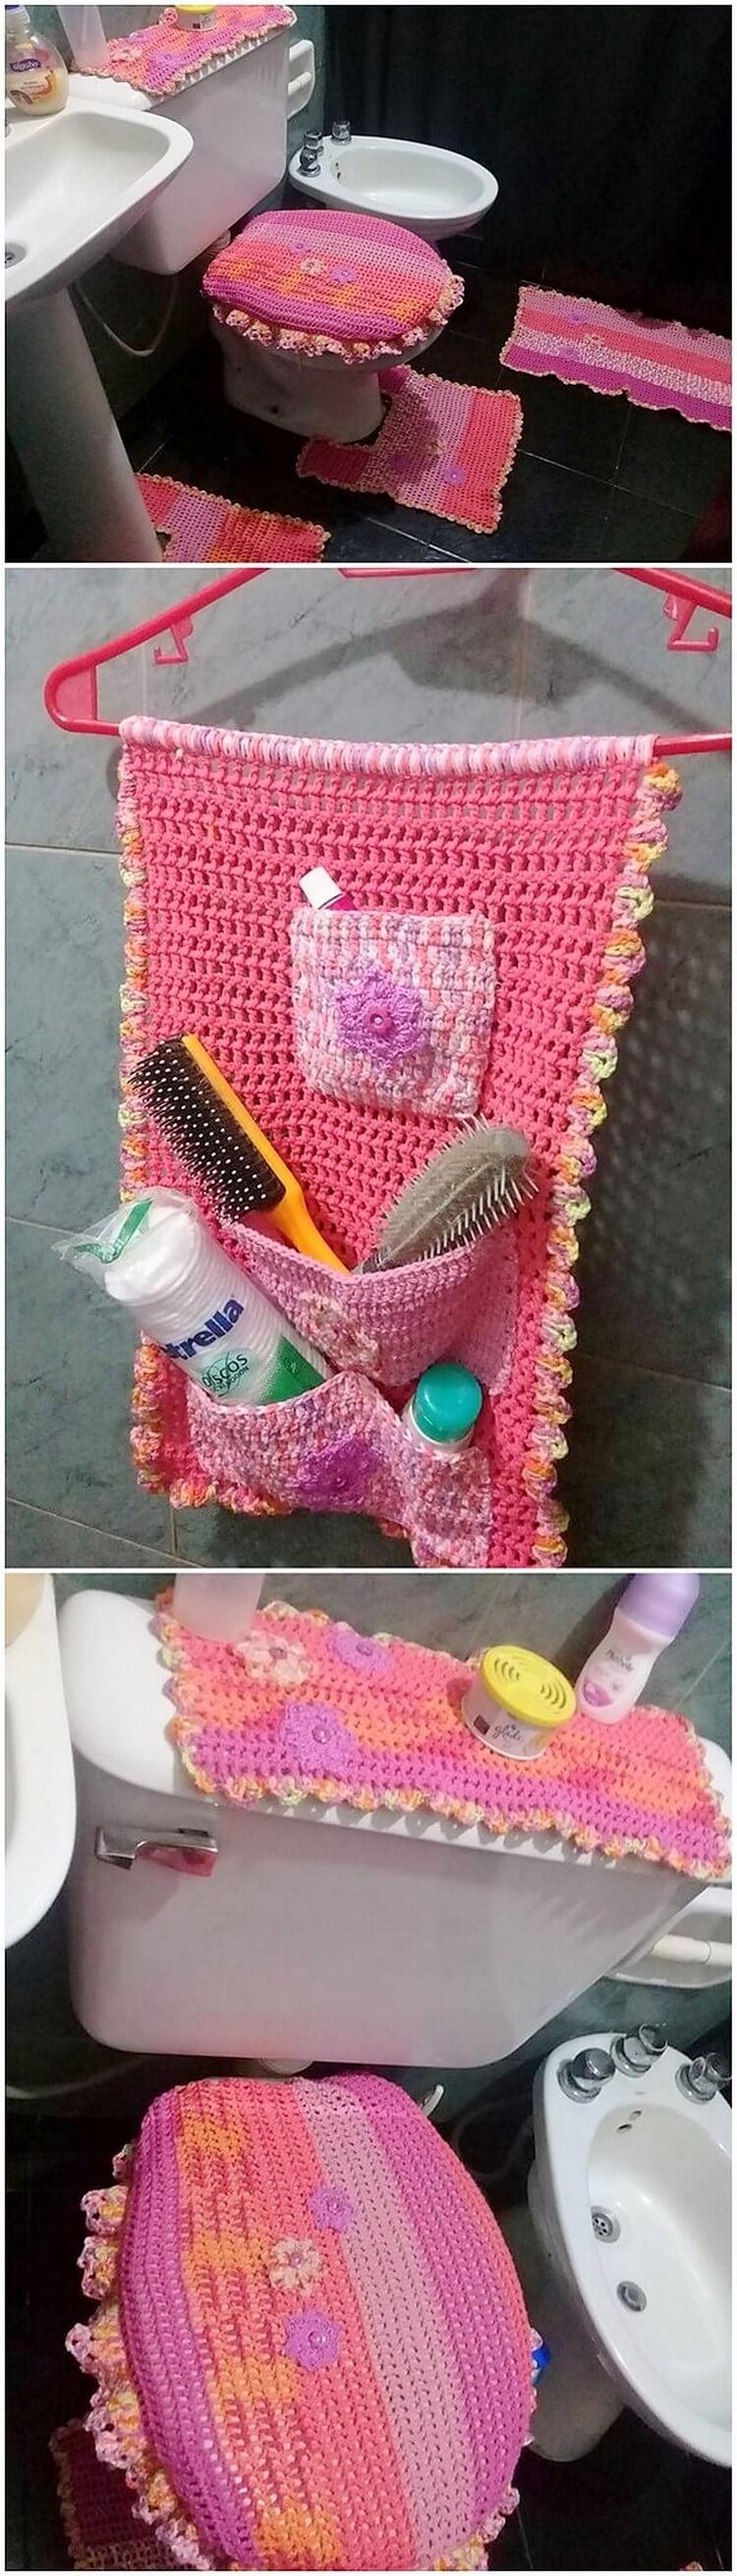 Crochet Creation for Bathroom